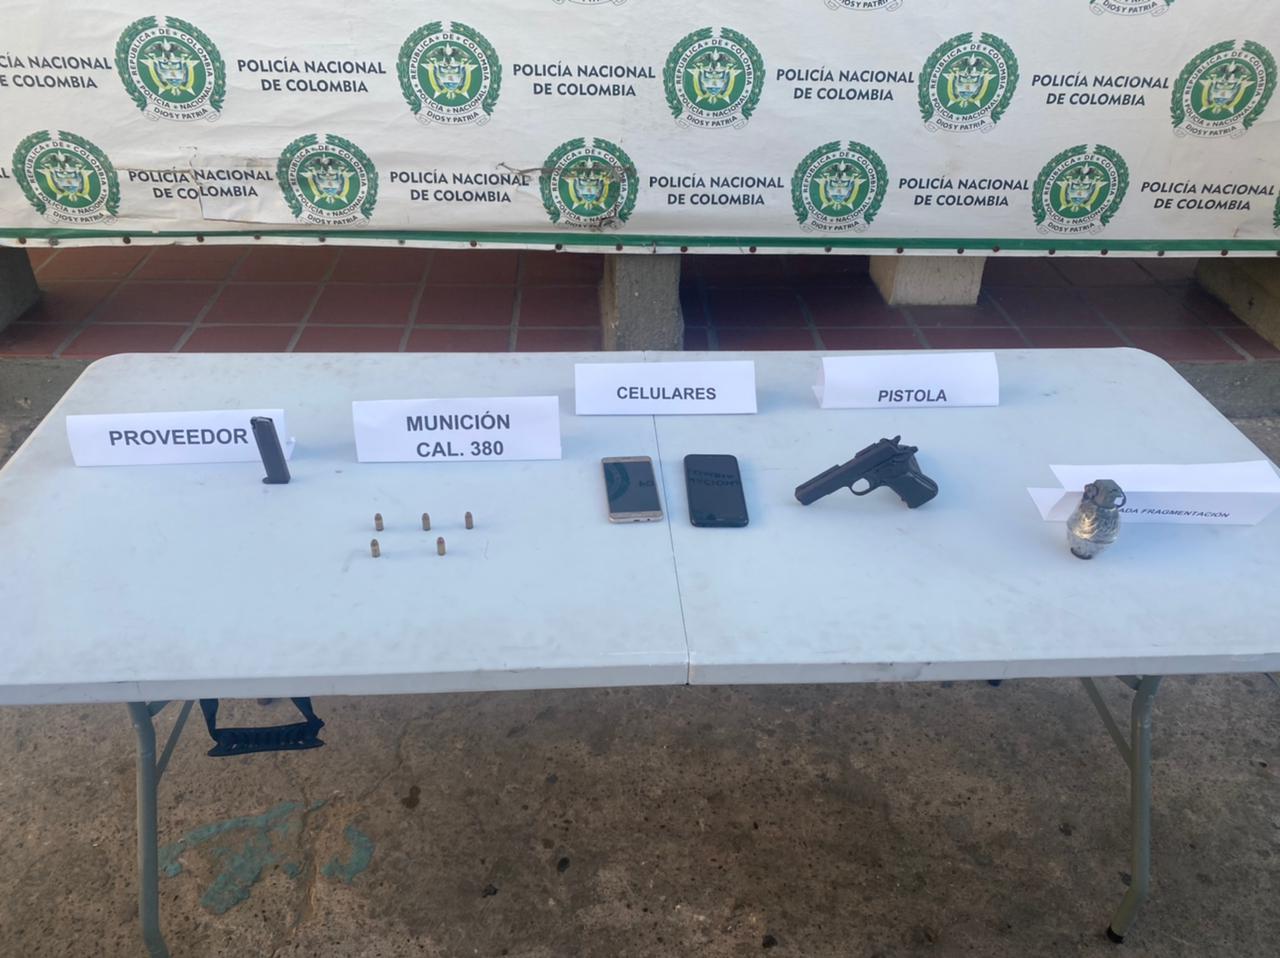 https://www.notasrosas.com/Sijin captura con pistola, granada y celulares a ciudadano investigado por homicidios en Maicao